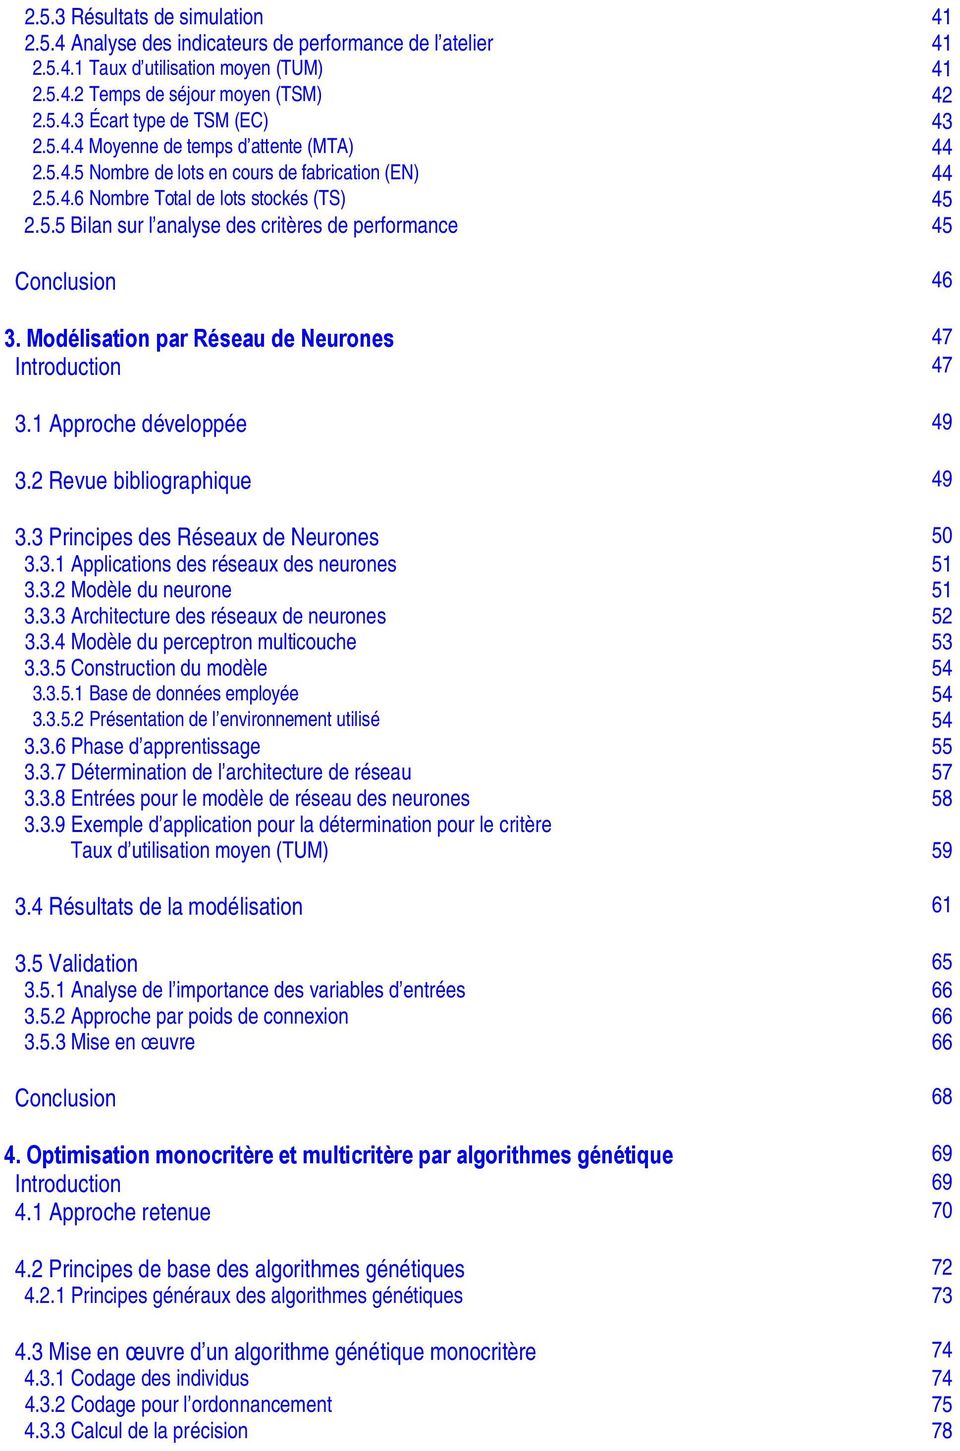 Modélisation par Réseau de Neurones 47 Introduction 47 3.1 Approche développée 49 3.2 Revue bibliographique 49 3.3 Principes des Réseaux de Neurones 50 3.3.1 Applications des réseaux des neurones 51 3.